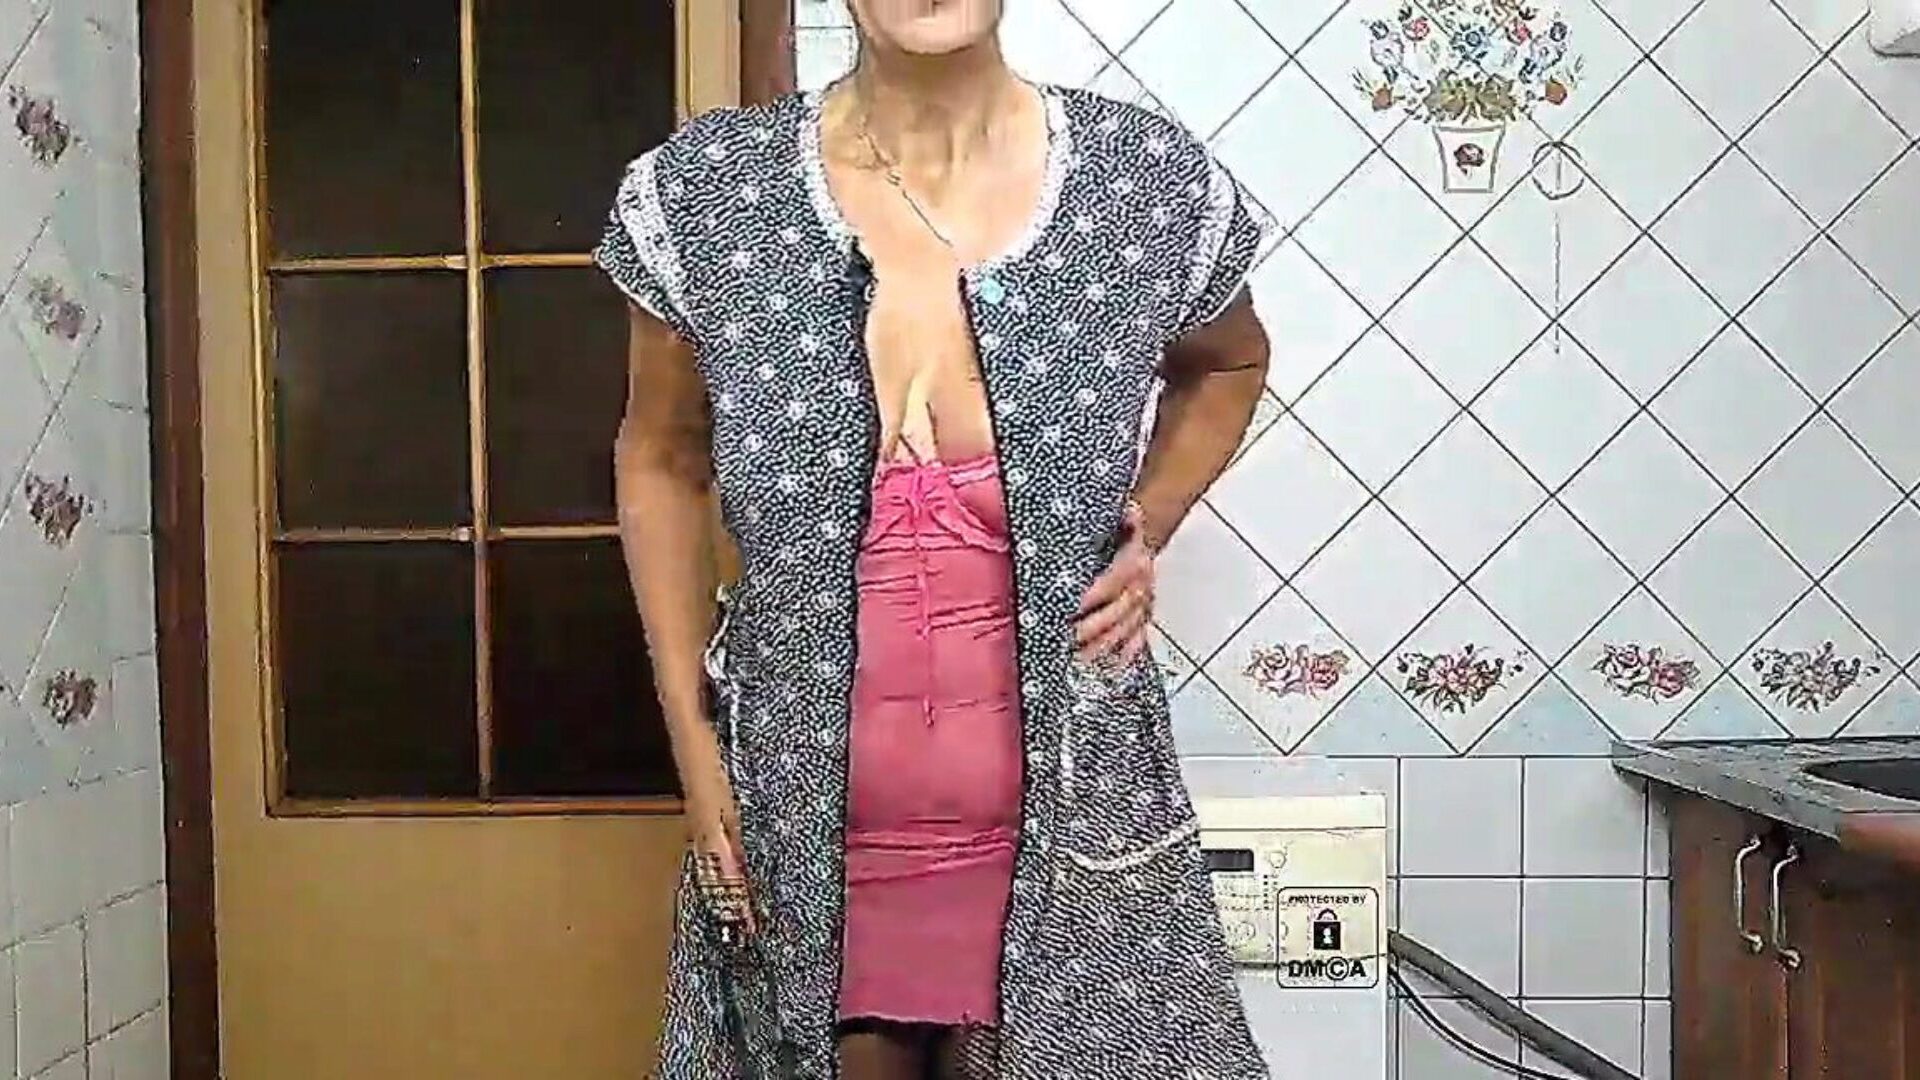 Η μεγάλη λεία κούνημα της Lukerya σε ροζ μοναχική ζεστή νοικοκυρά στον ελεύθερο χρόνο της κουβεντιάζοντας στην κουζίνα με ροζ εσώρουχα κάλτσες από έβενο και μικροκασέτες κιλότες εμφανίζει twerk με μια ανατριχιαστική καυτή μεγάλη λεία